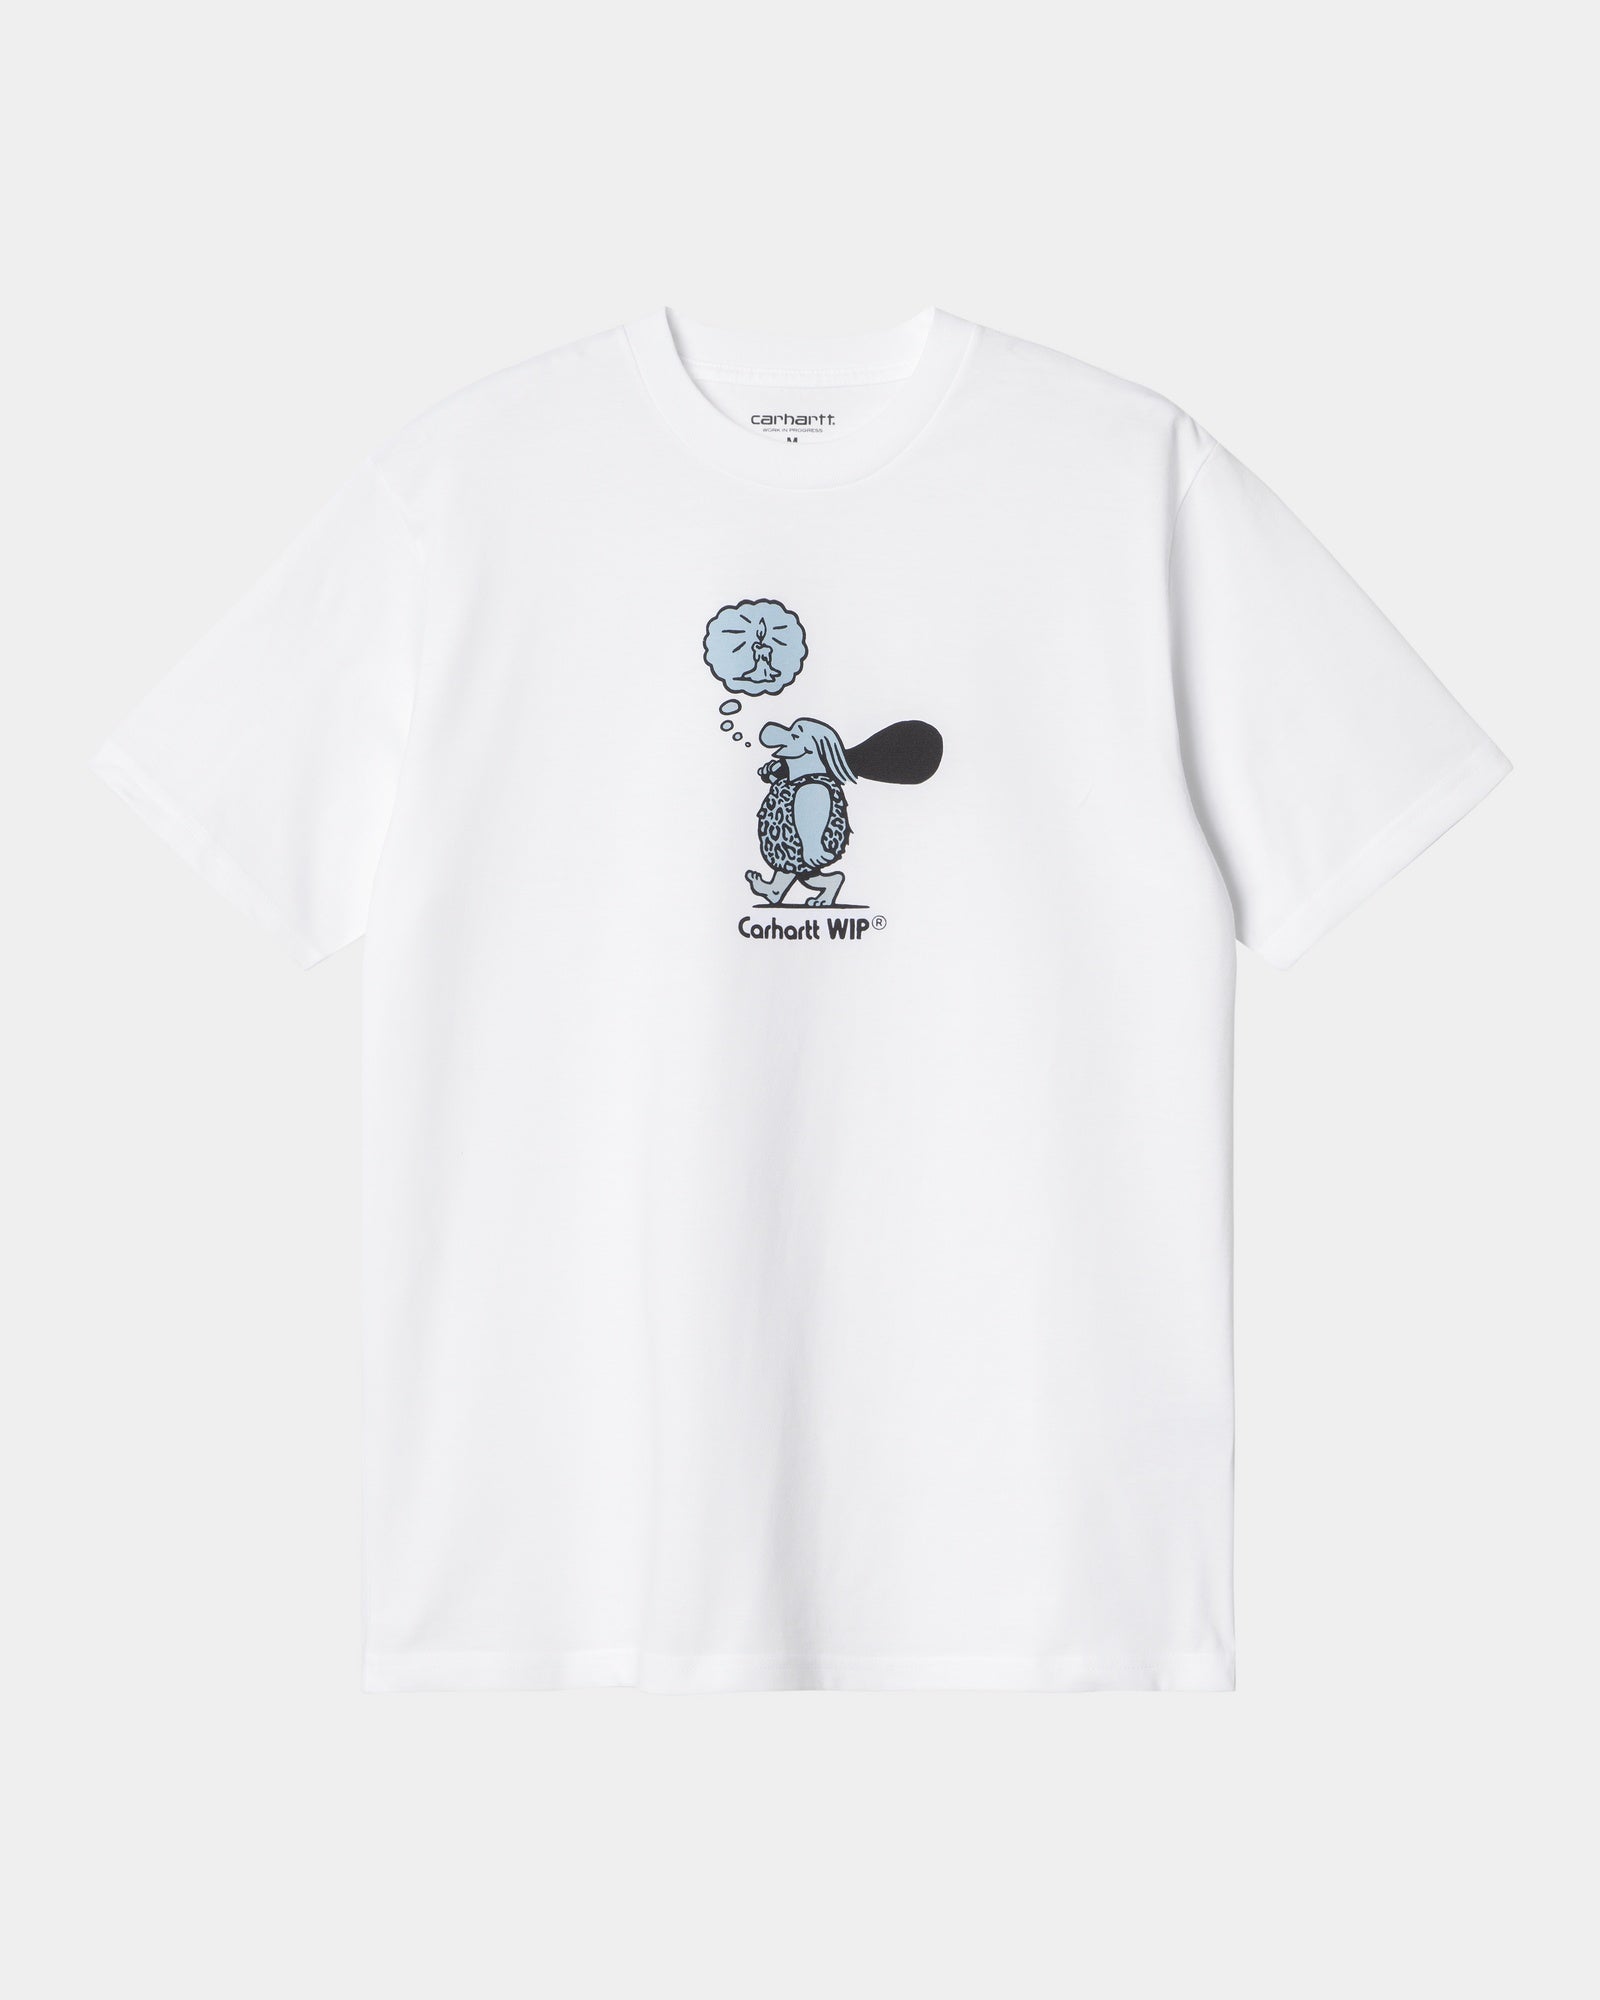 칼하트WIP Carhartt Original Thought T-Shirt,White